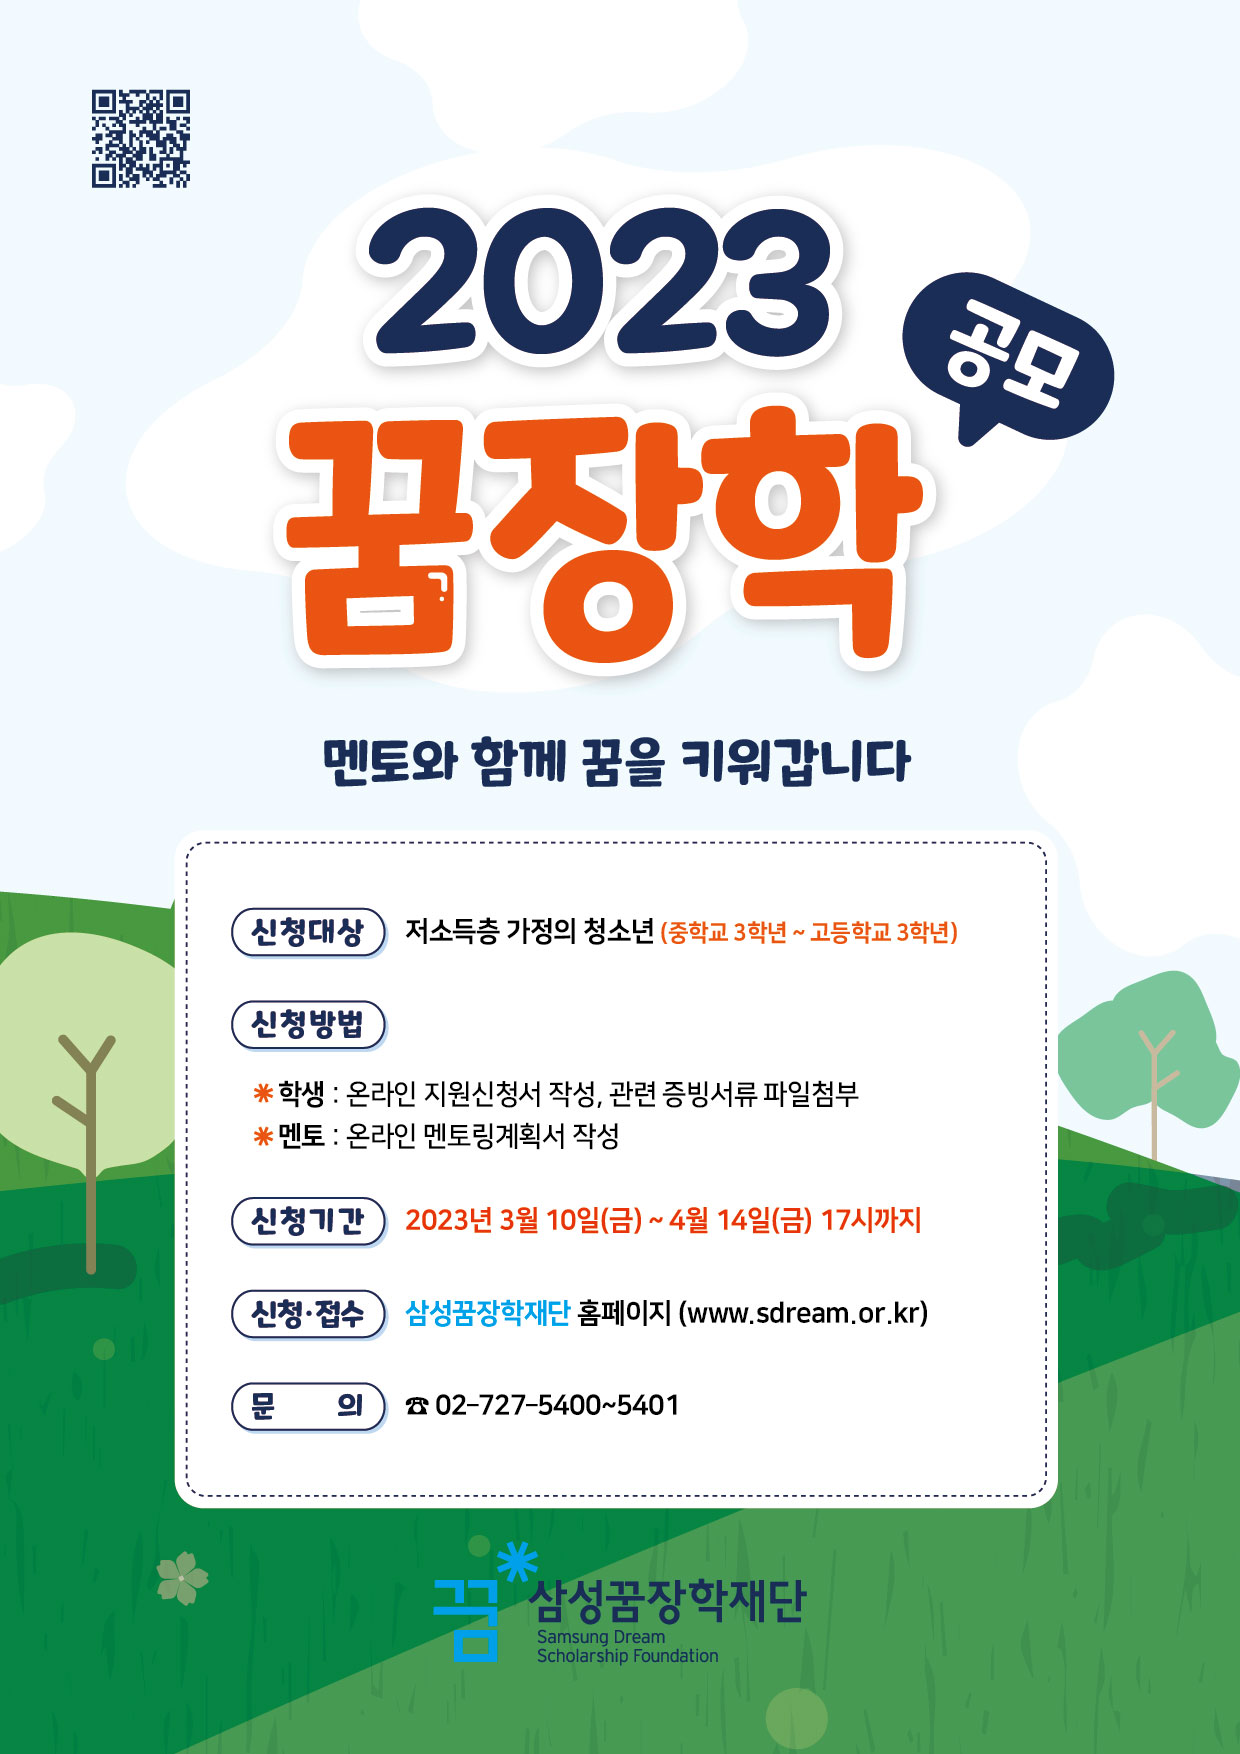 사본 -(재)삼성꿈장학재단_2023년 꿈장학 신청 안내 포스터